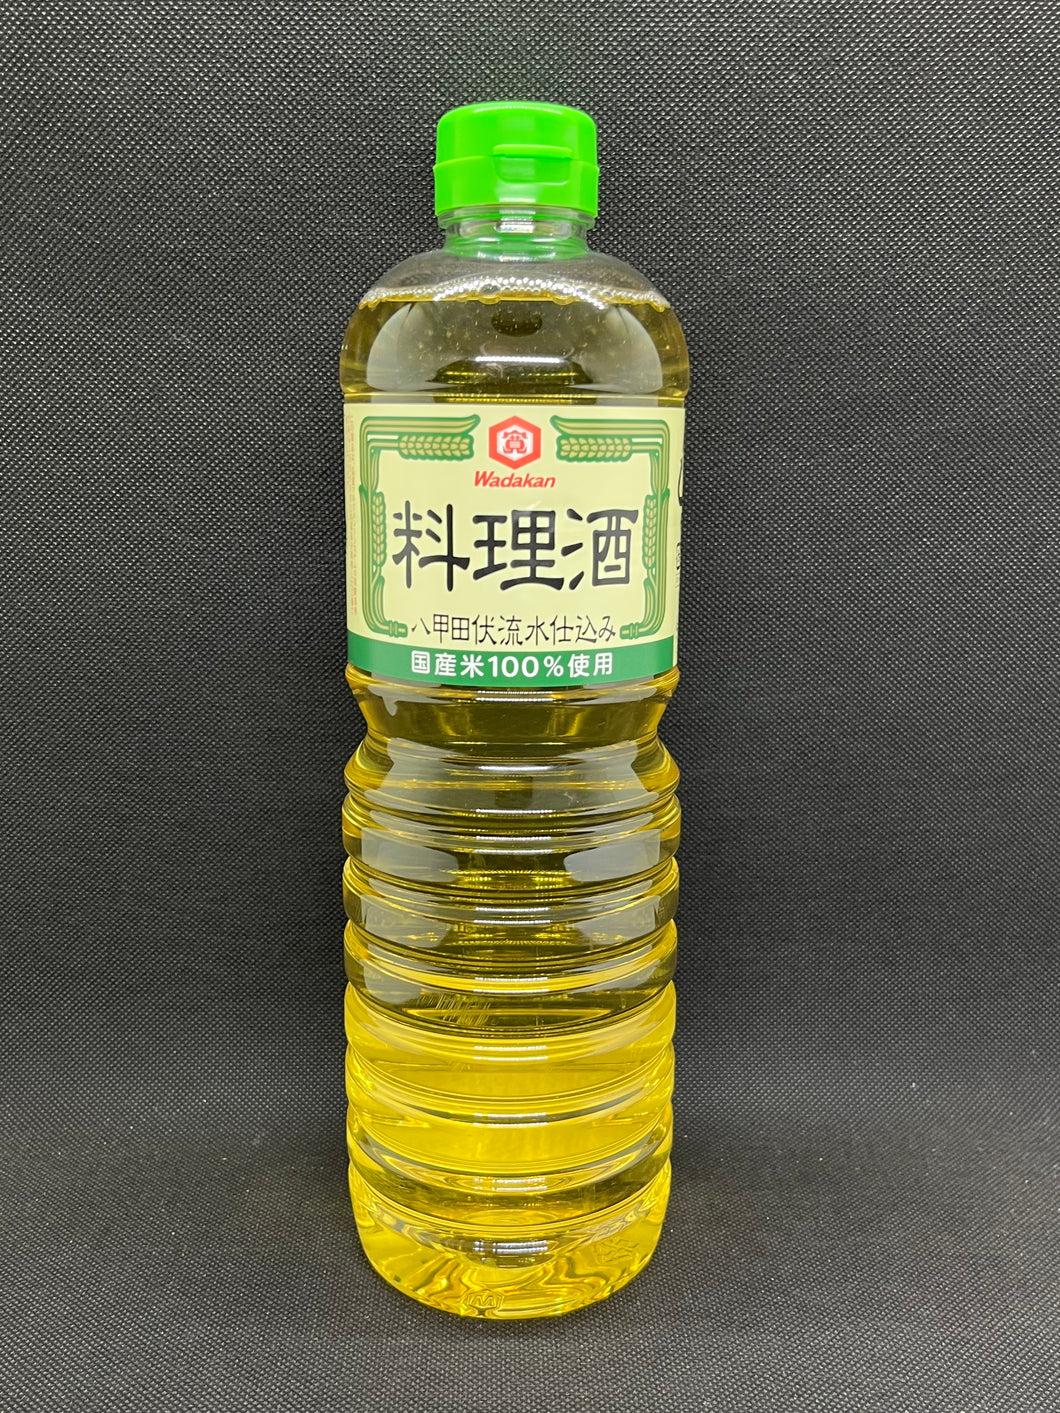 ワダカン料理酒 (1L)